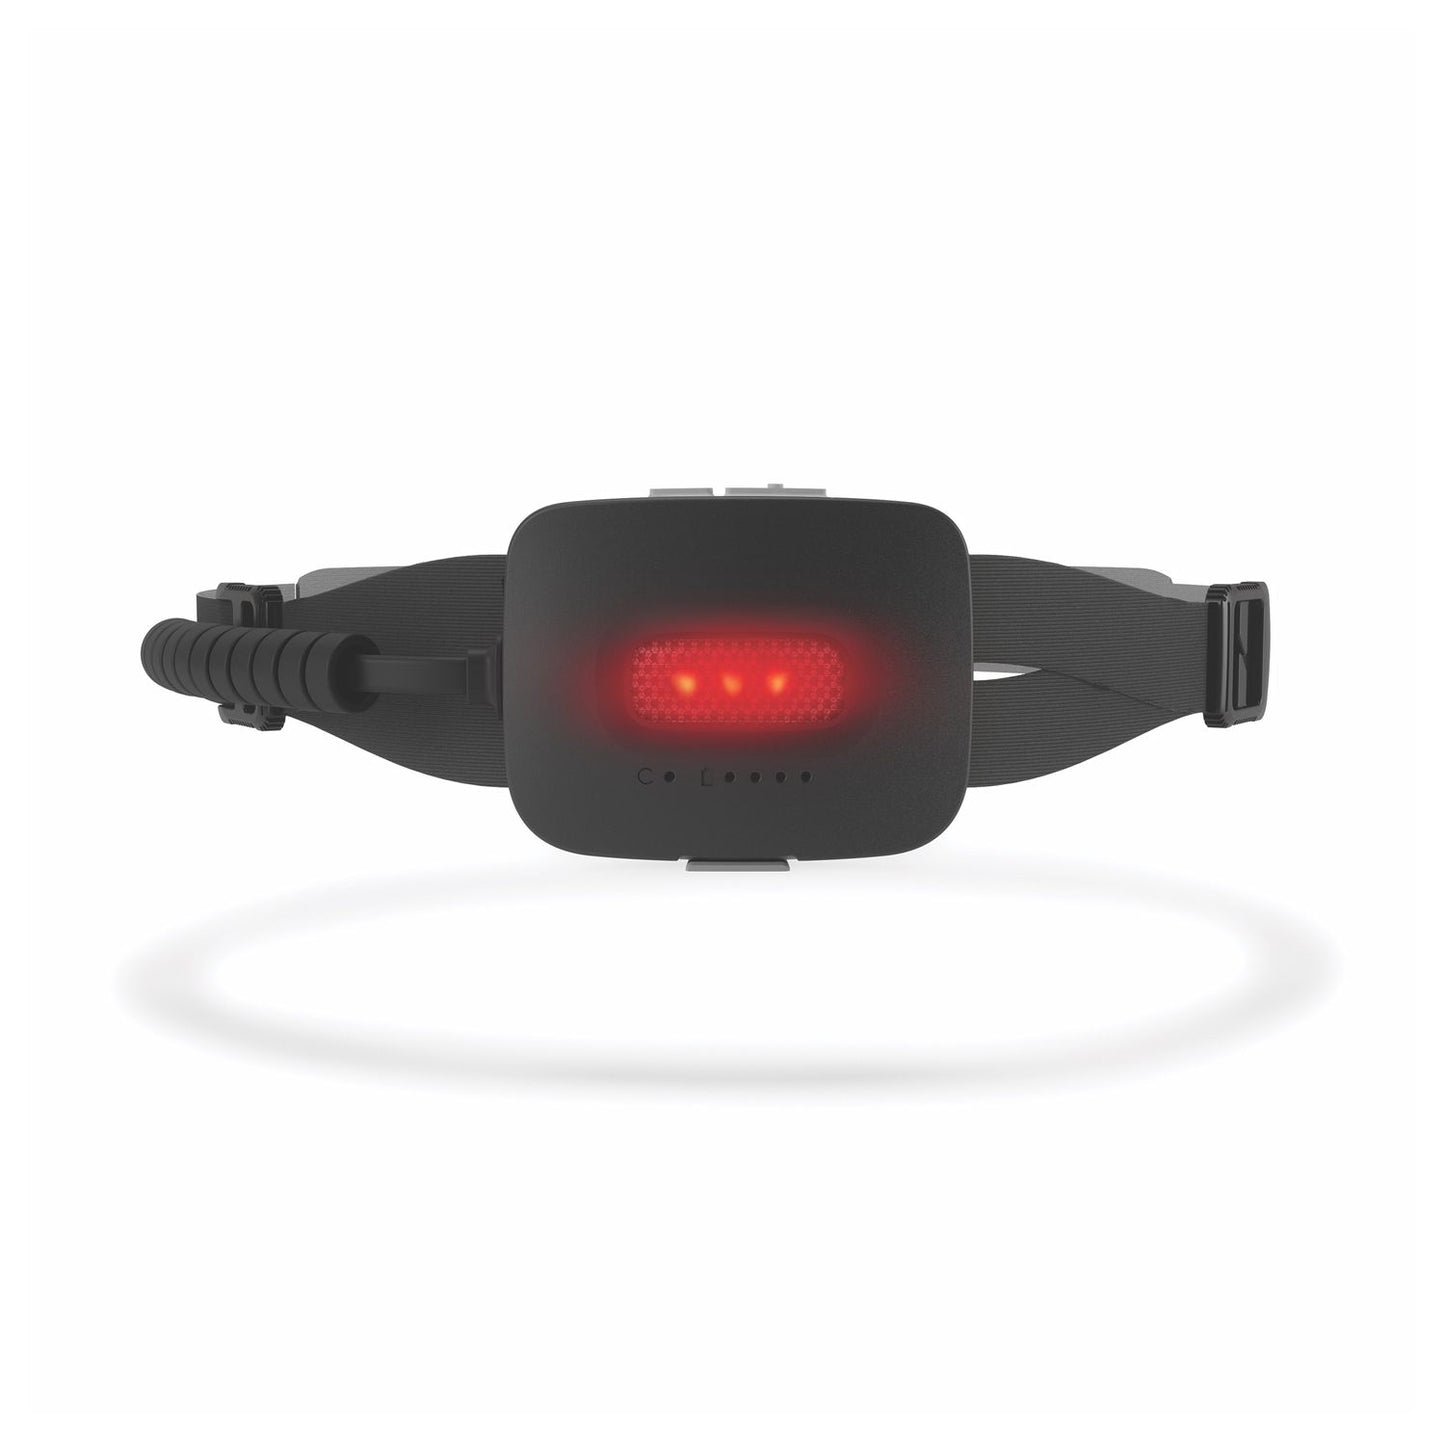 BioLite HeadLamp 750 - lampe frontale professionnelle avec un maximum de 750 lumens, batterie rechargeable, 150 g, divers